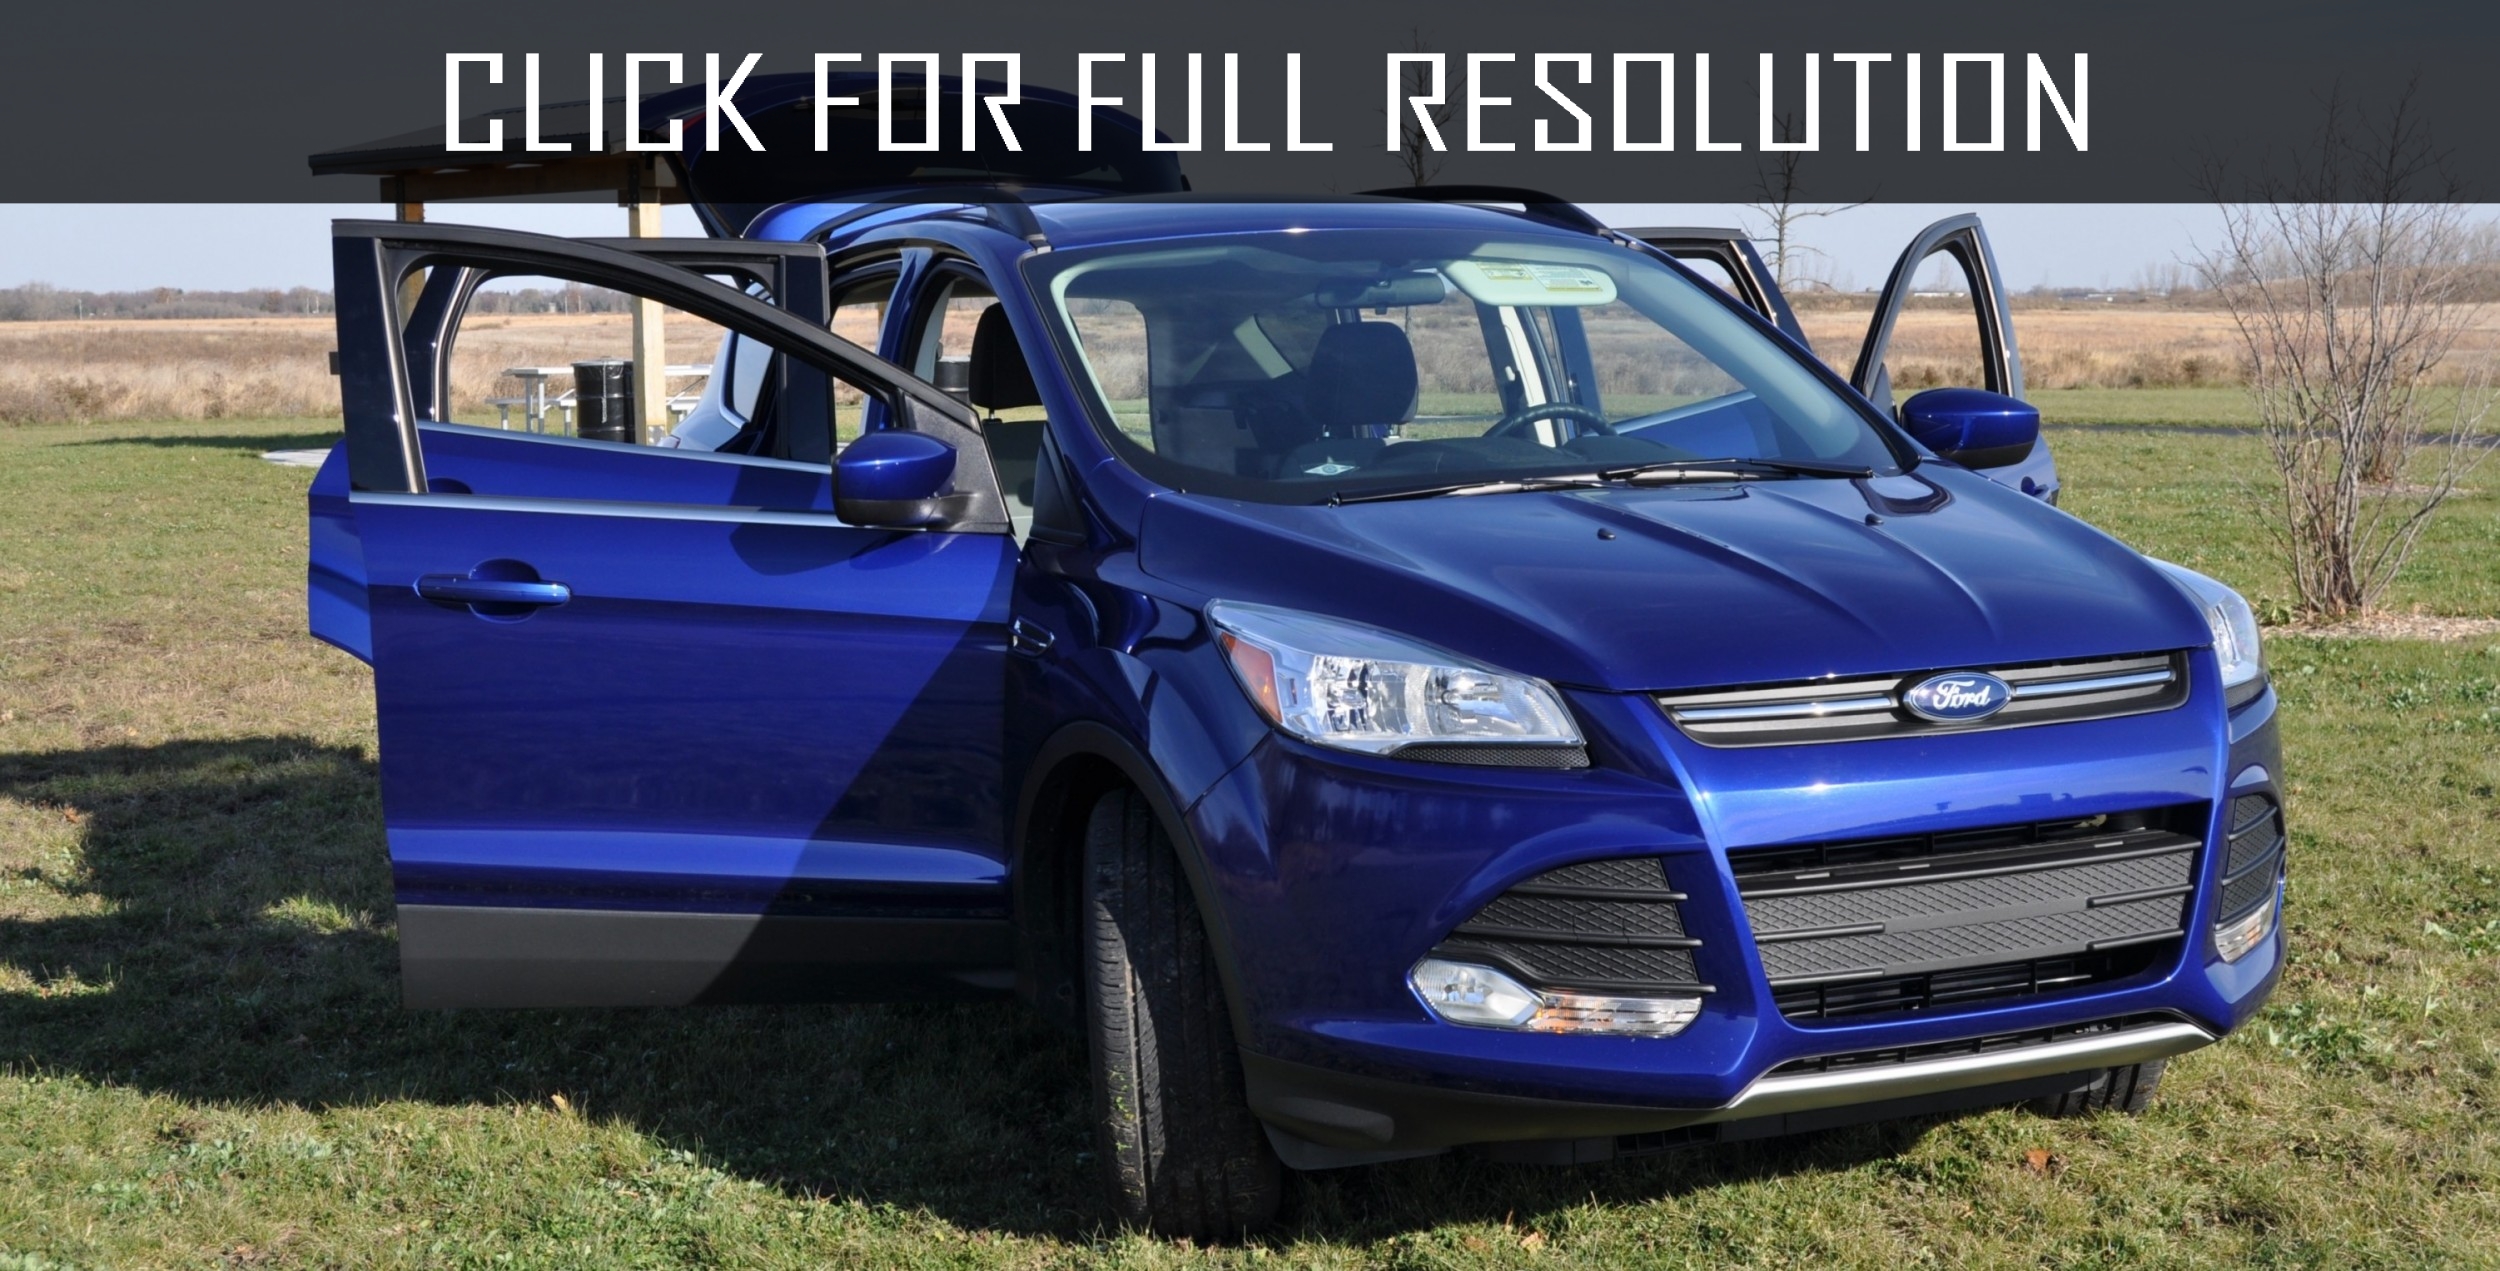 Ford Escape 2014 Blue